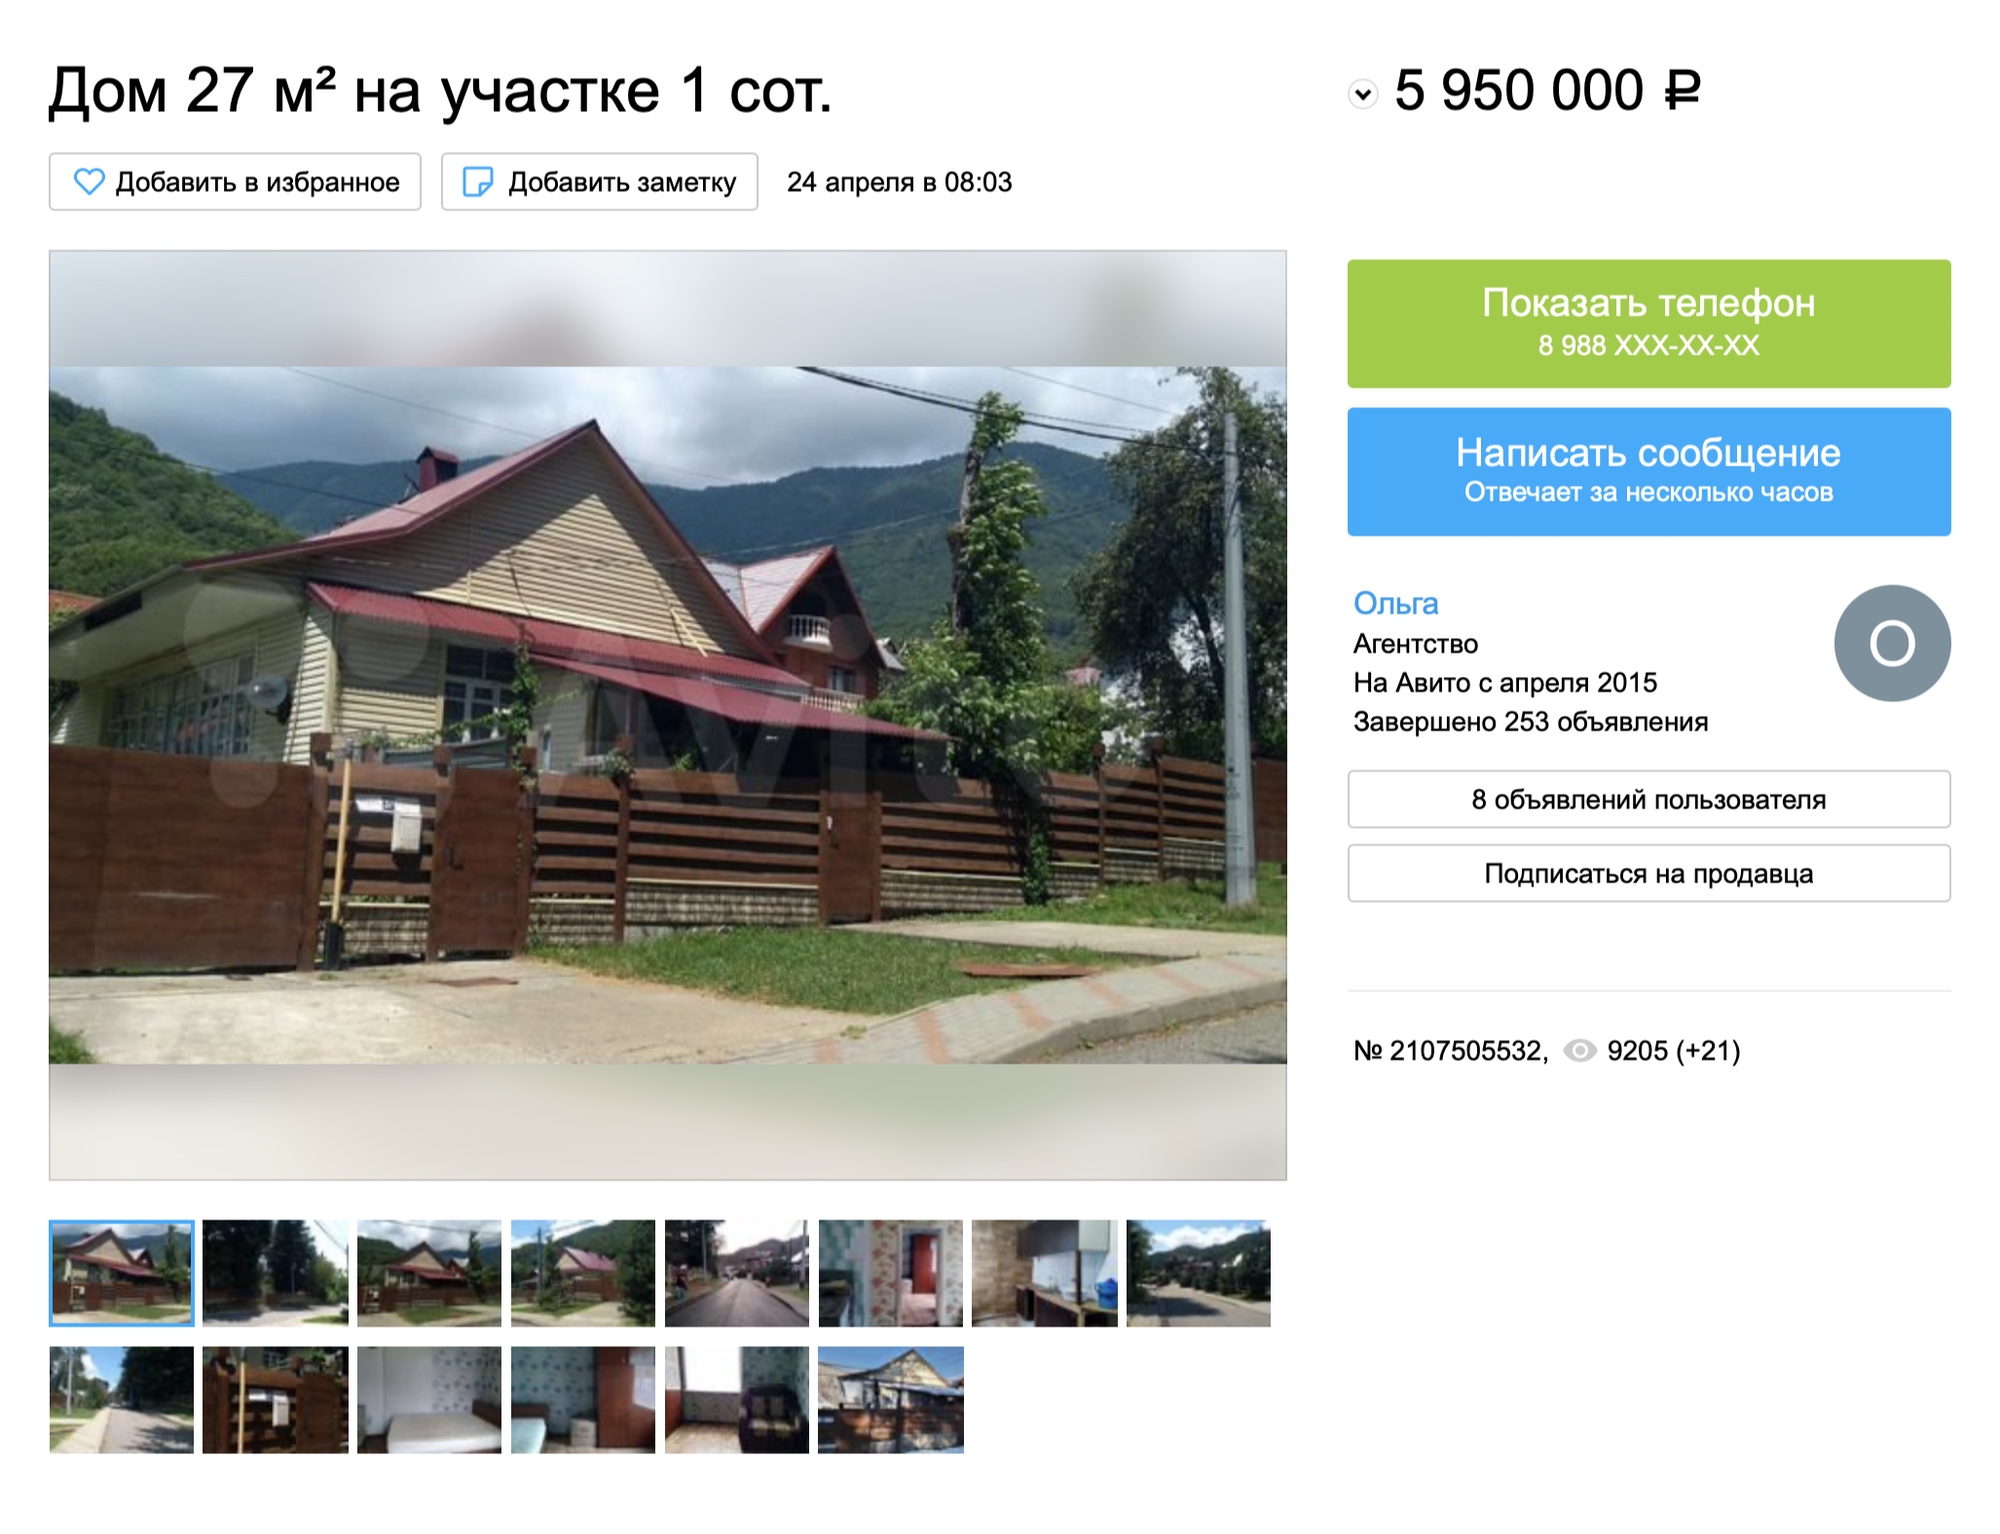 Этот дом в районе ГЭС продают за 5,9 млн рублей